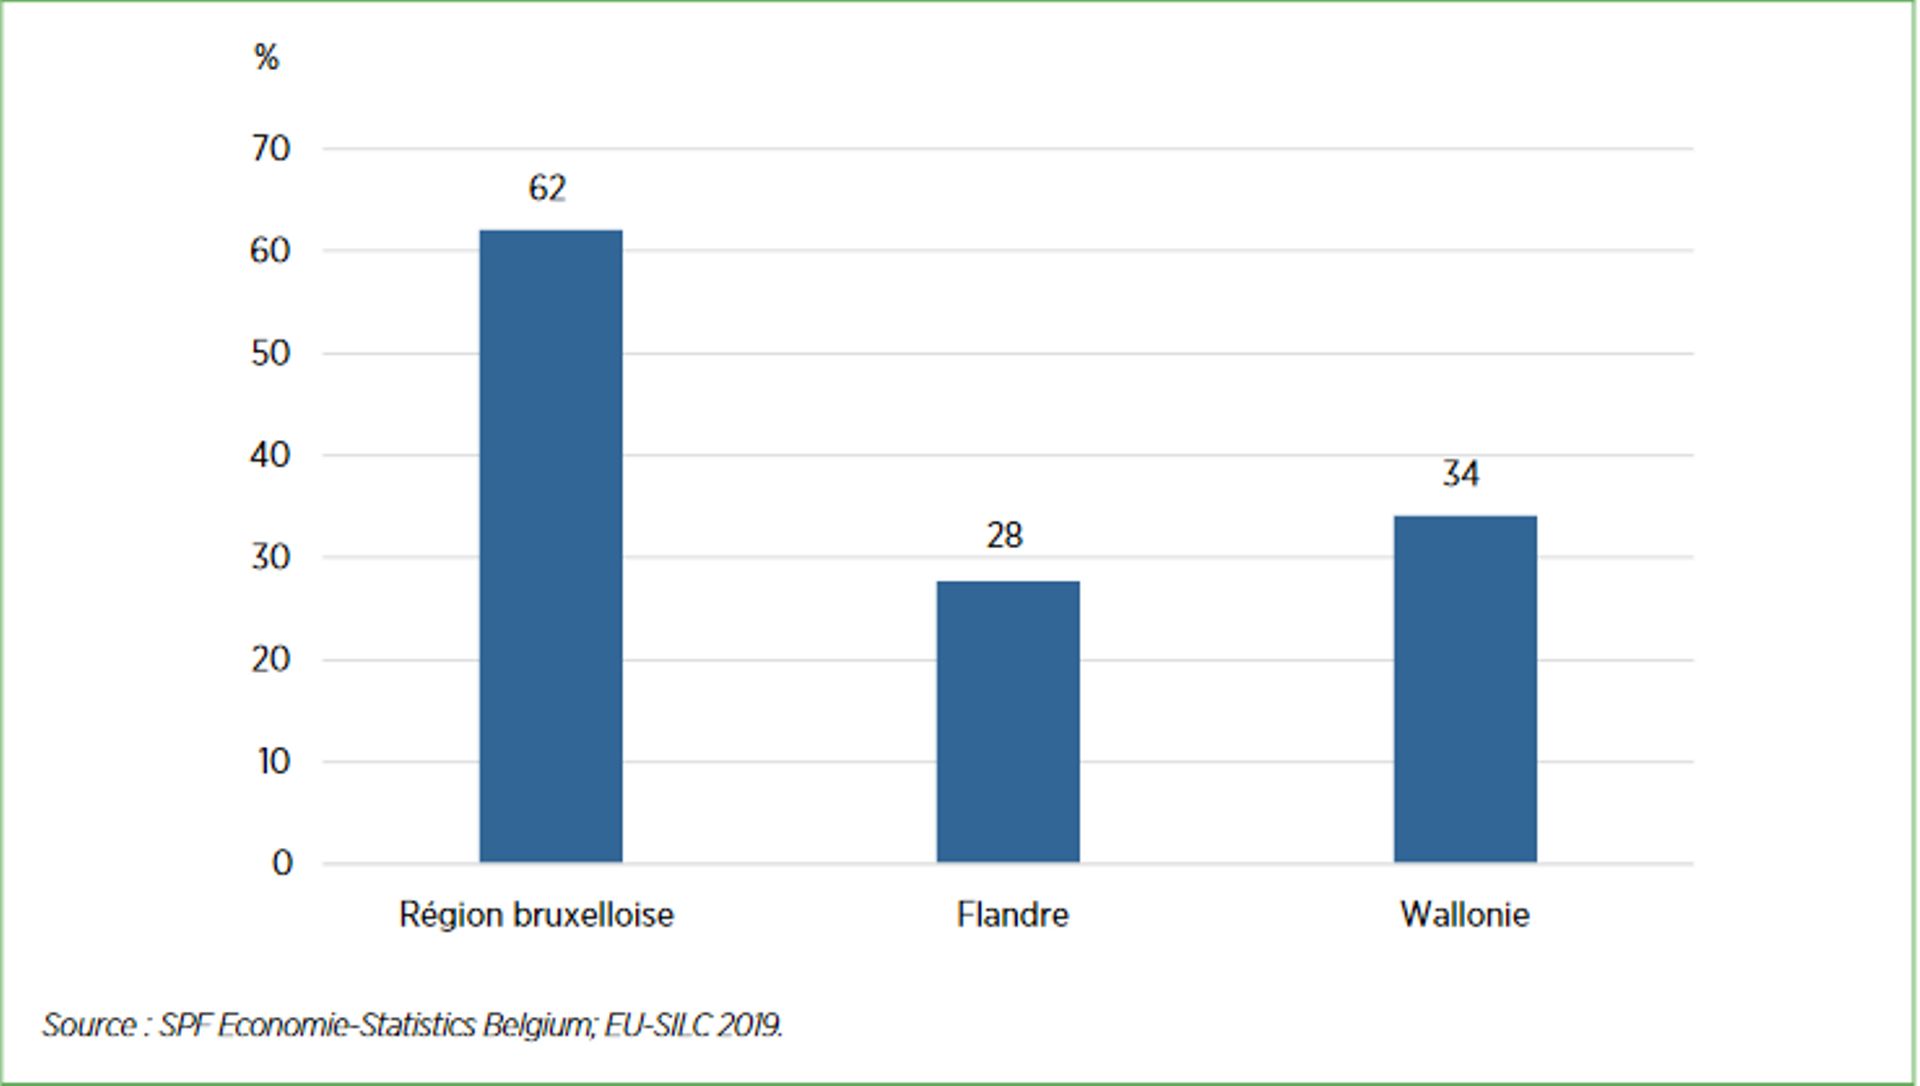 Sur la base de l’enquête EU-SILC 2019, 62 % des ménages sont locataires en Région bruxelloise, contre 28 % en Flandre et 34 % en Wallonie